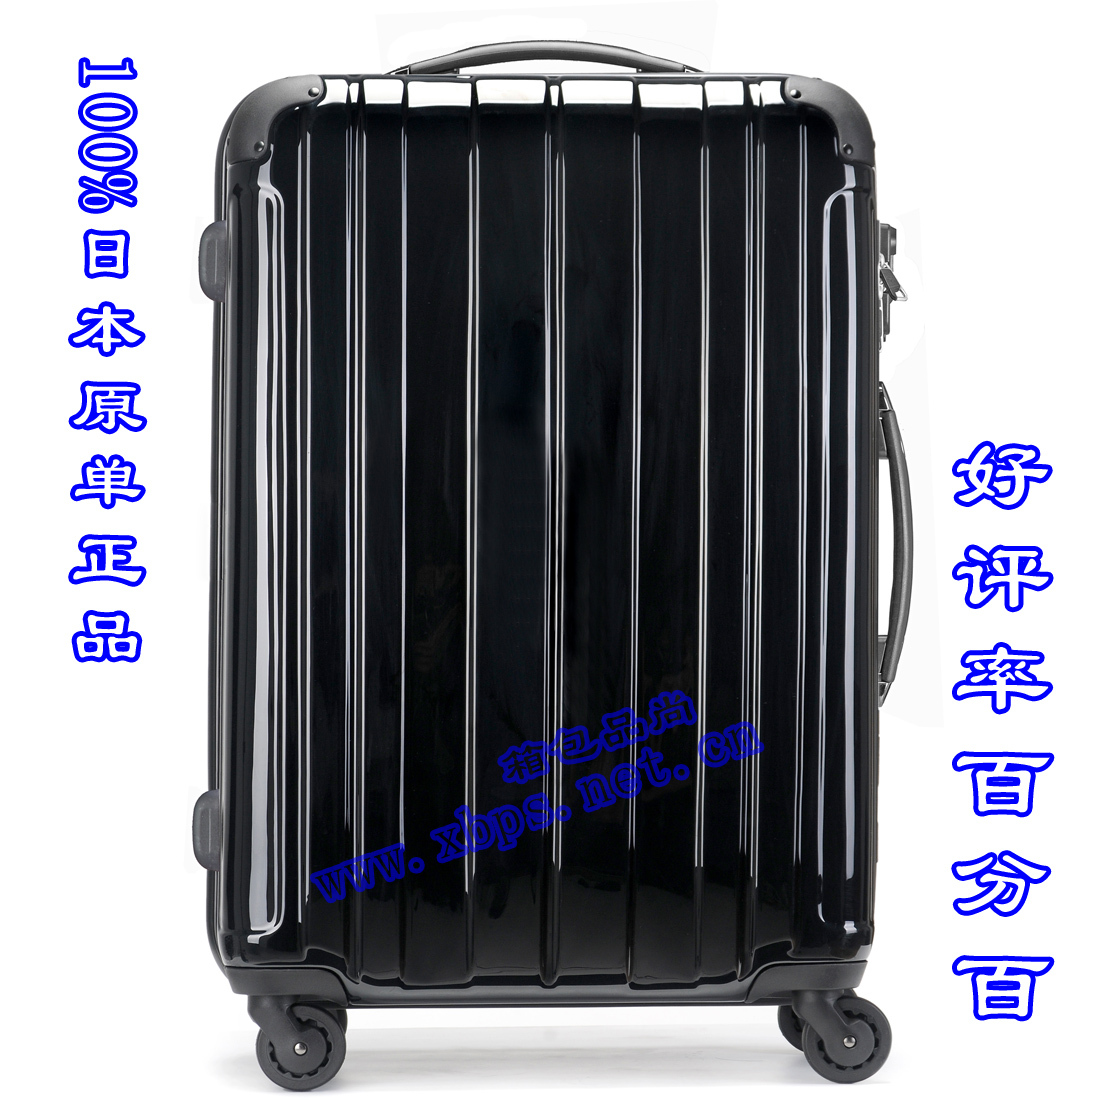 22寸日本玛瑙黑色旅行箱高档钢琴烤漆黑色拉杆箱优质行李箱